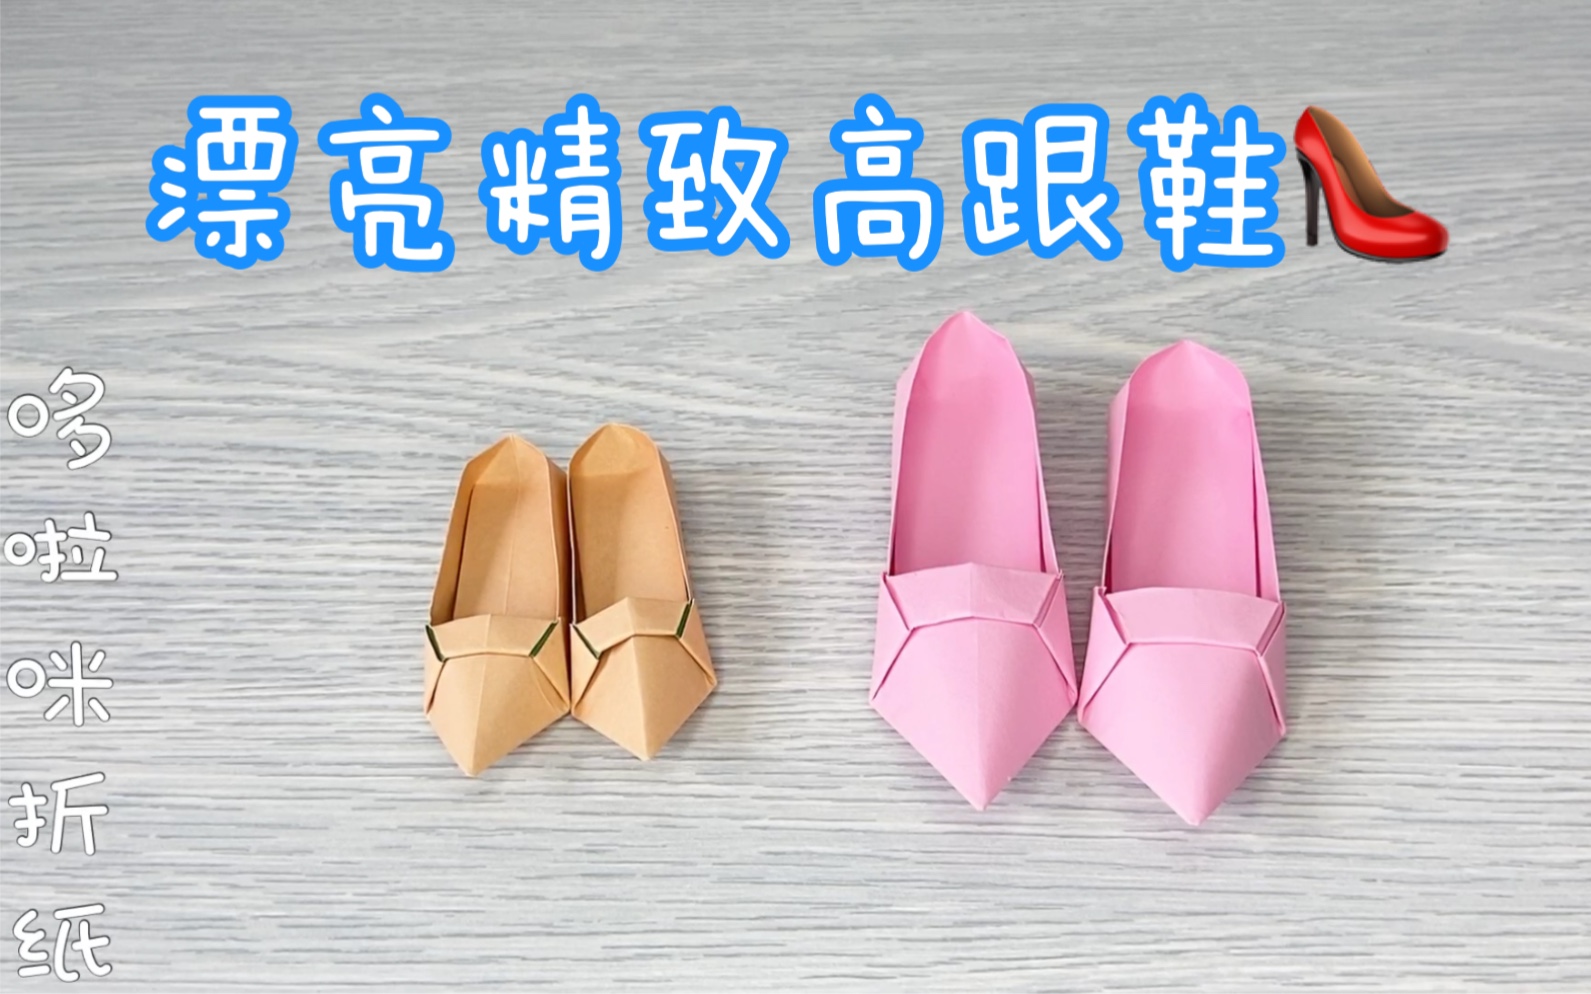 可爱公主鞋折纸简单好看的高跟鞋手工折纸教程快给芭比折一双吧